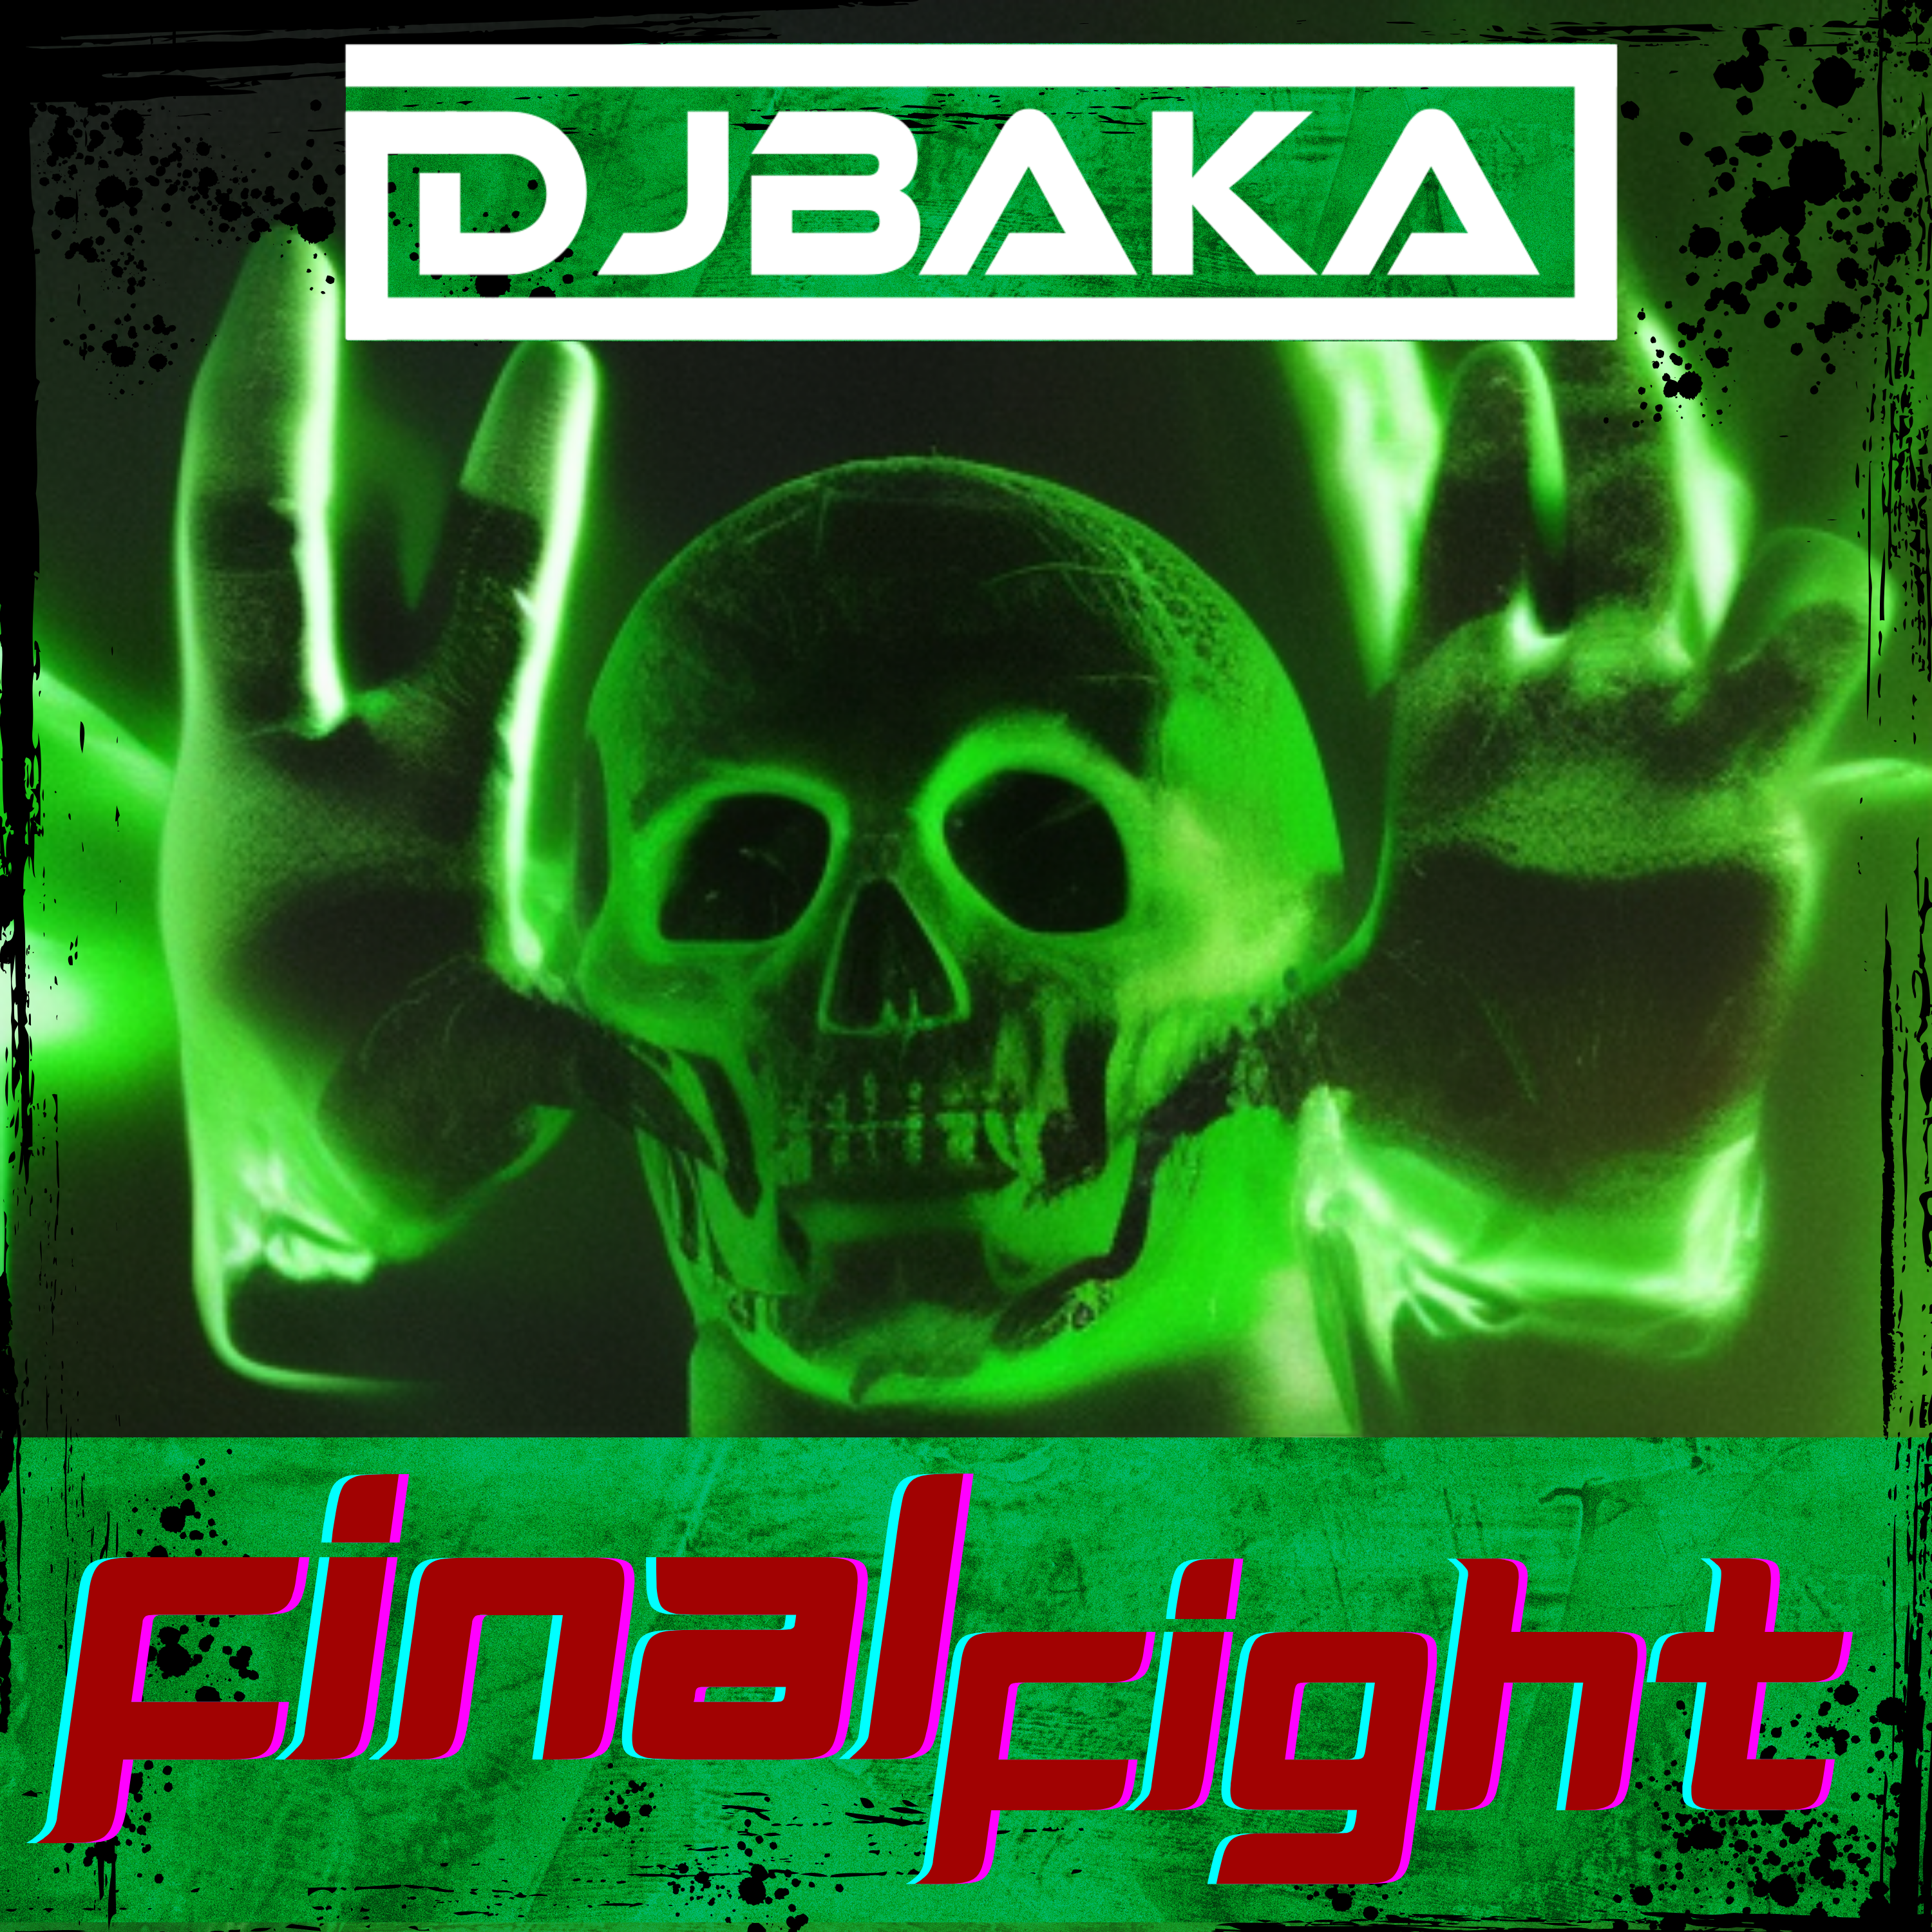 DJBaka - Final Fight Hard Techno Release